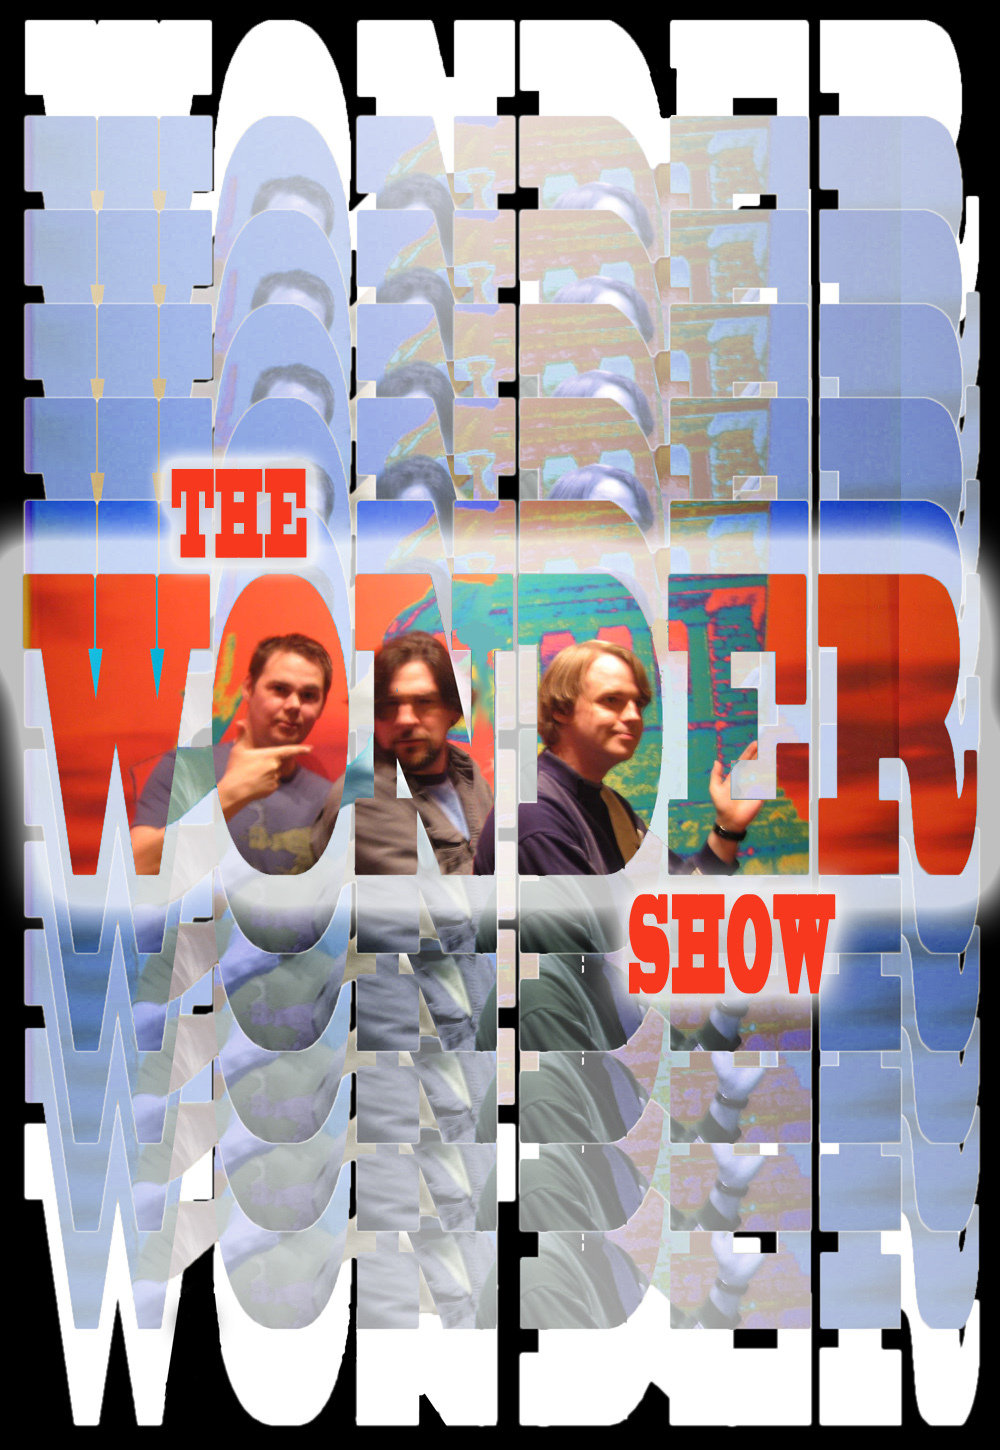 The Wonder Show